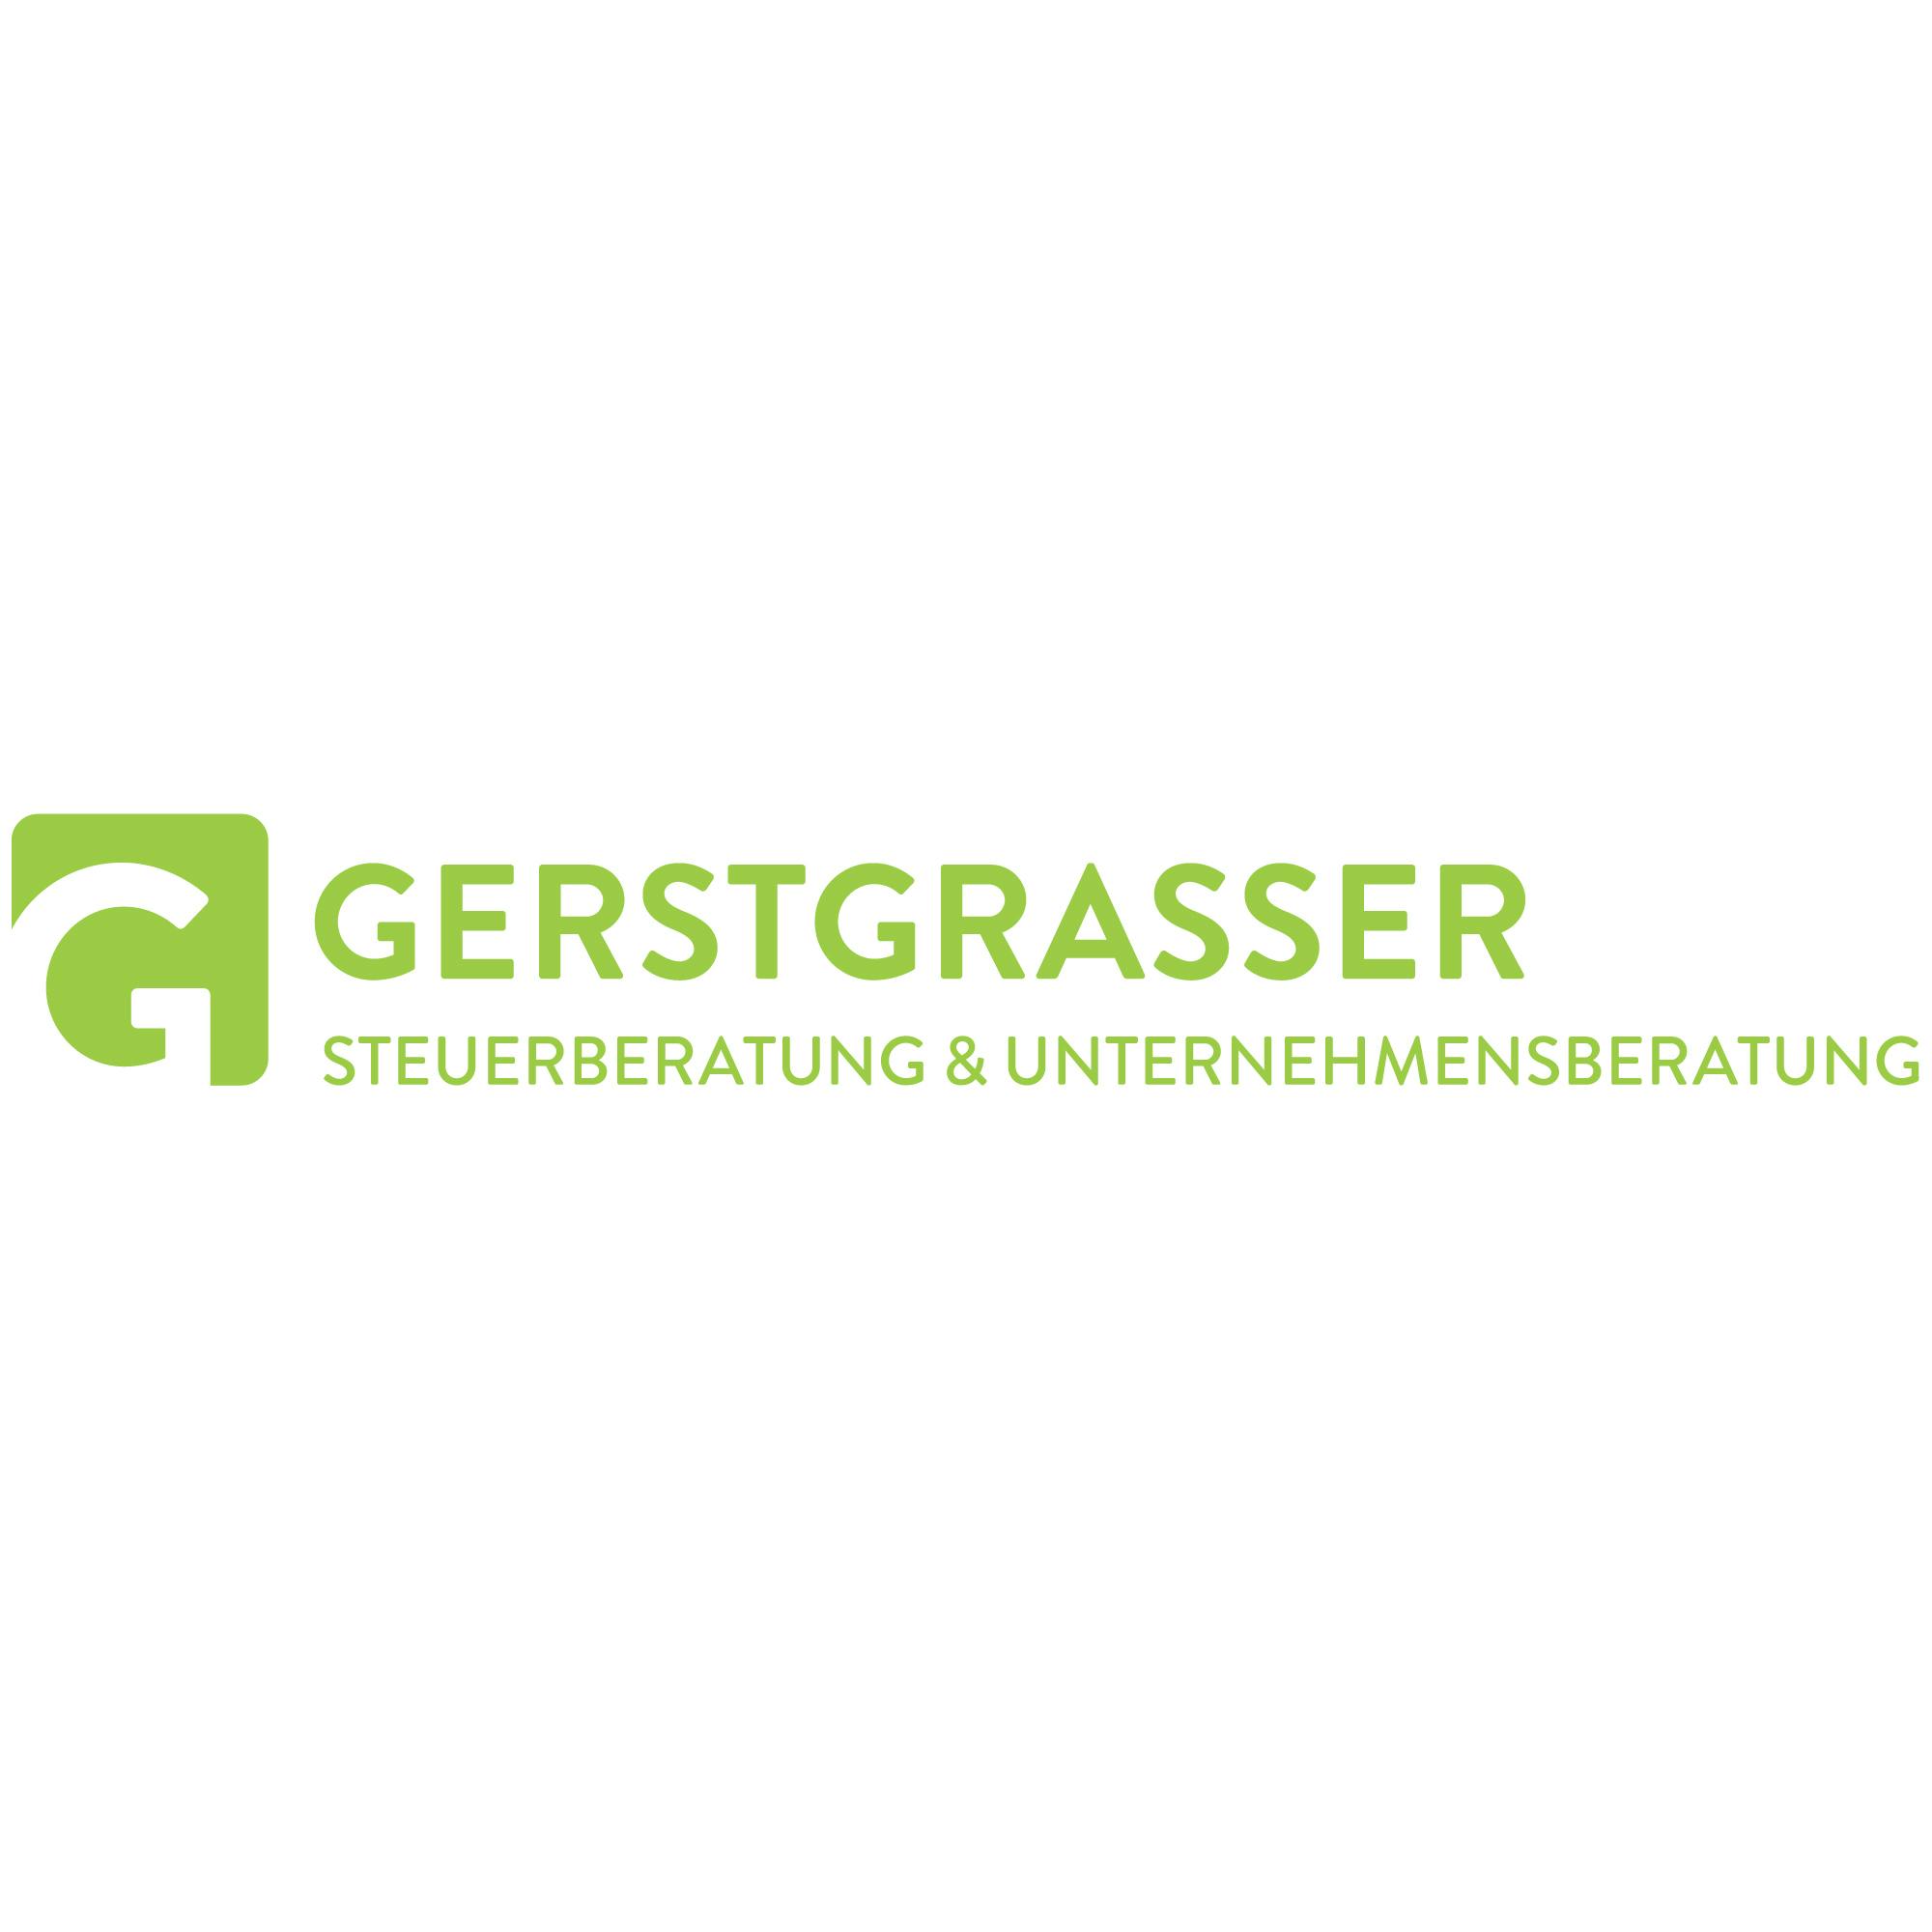 Gerstgrasser Steuerberatung und Unternehmensberatung: Gerstgrasser